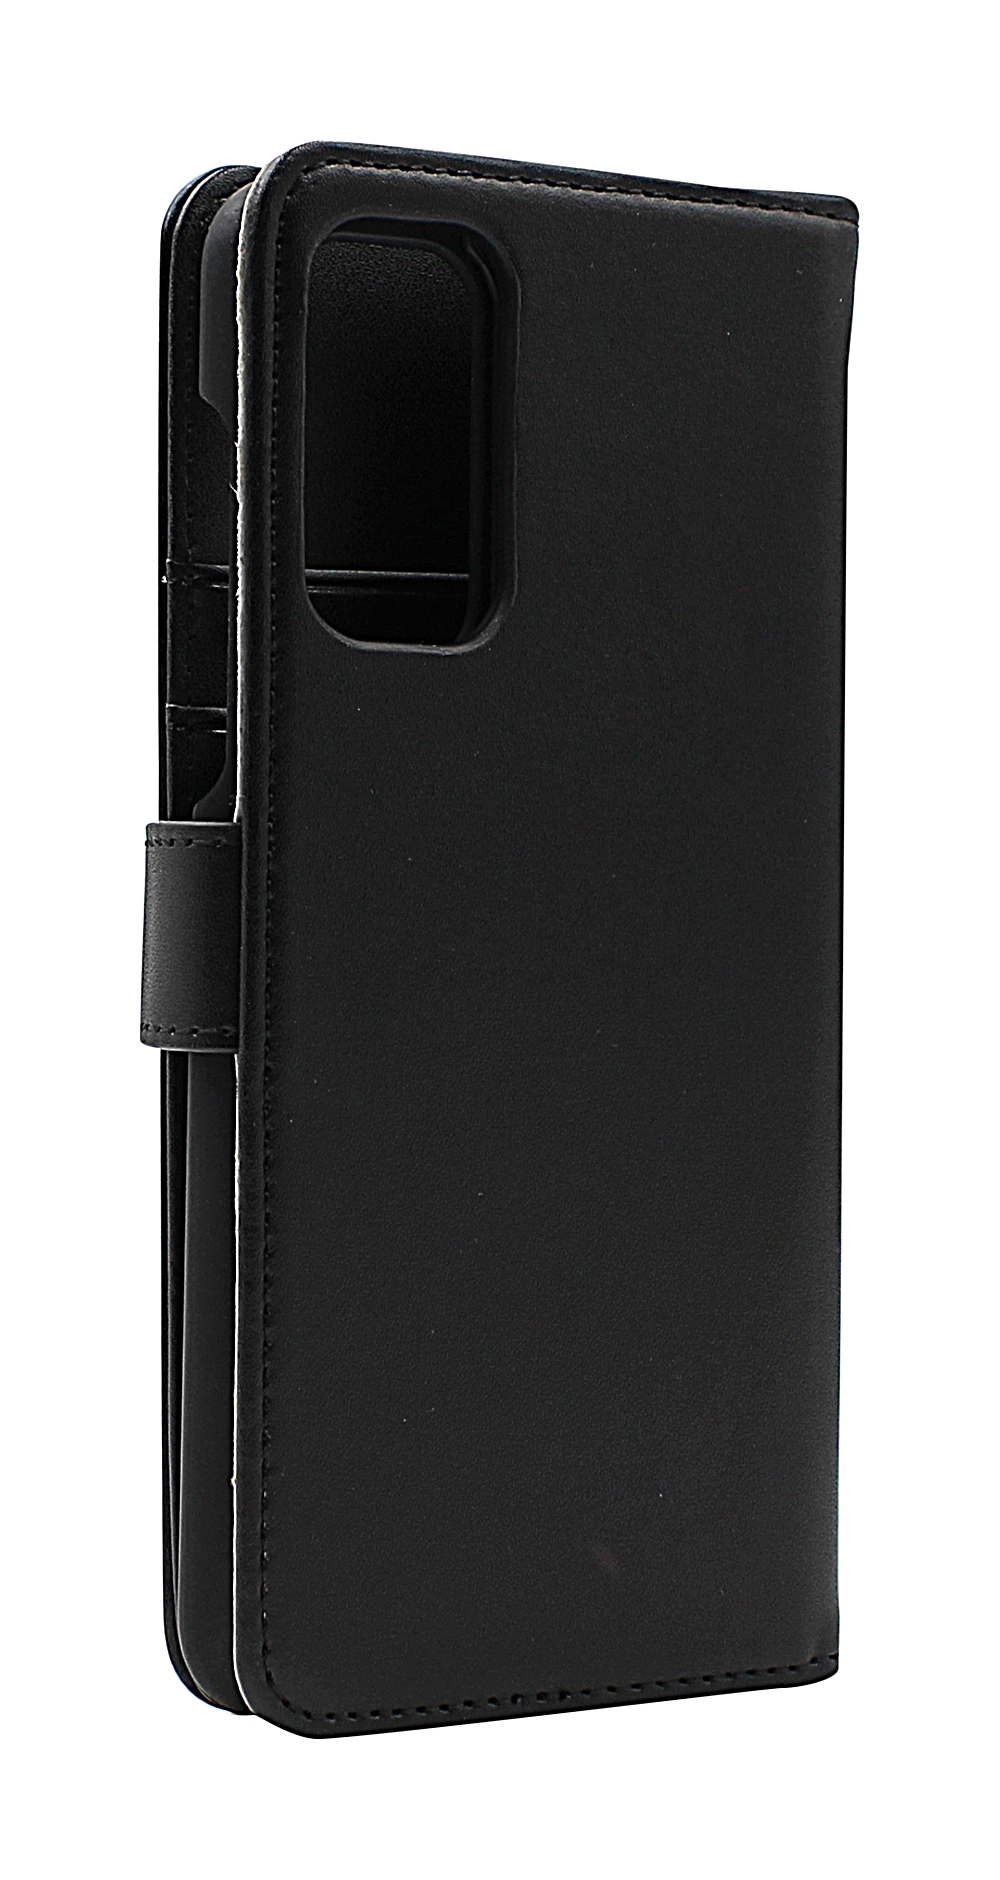 CoverIn Skimblocker Magneettikotelo OnePlus Nord 2 5G